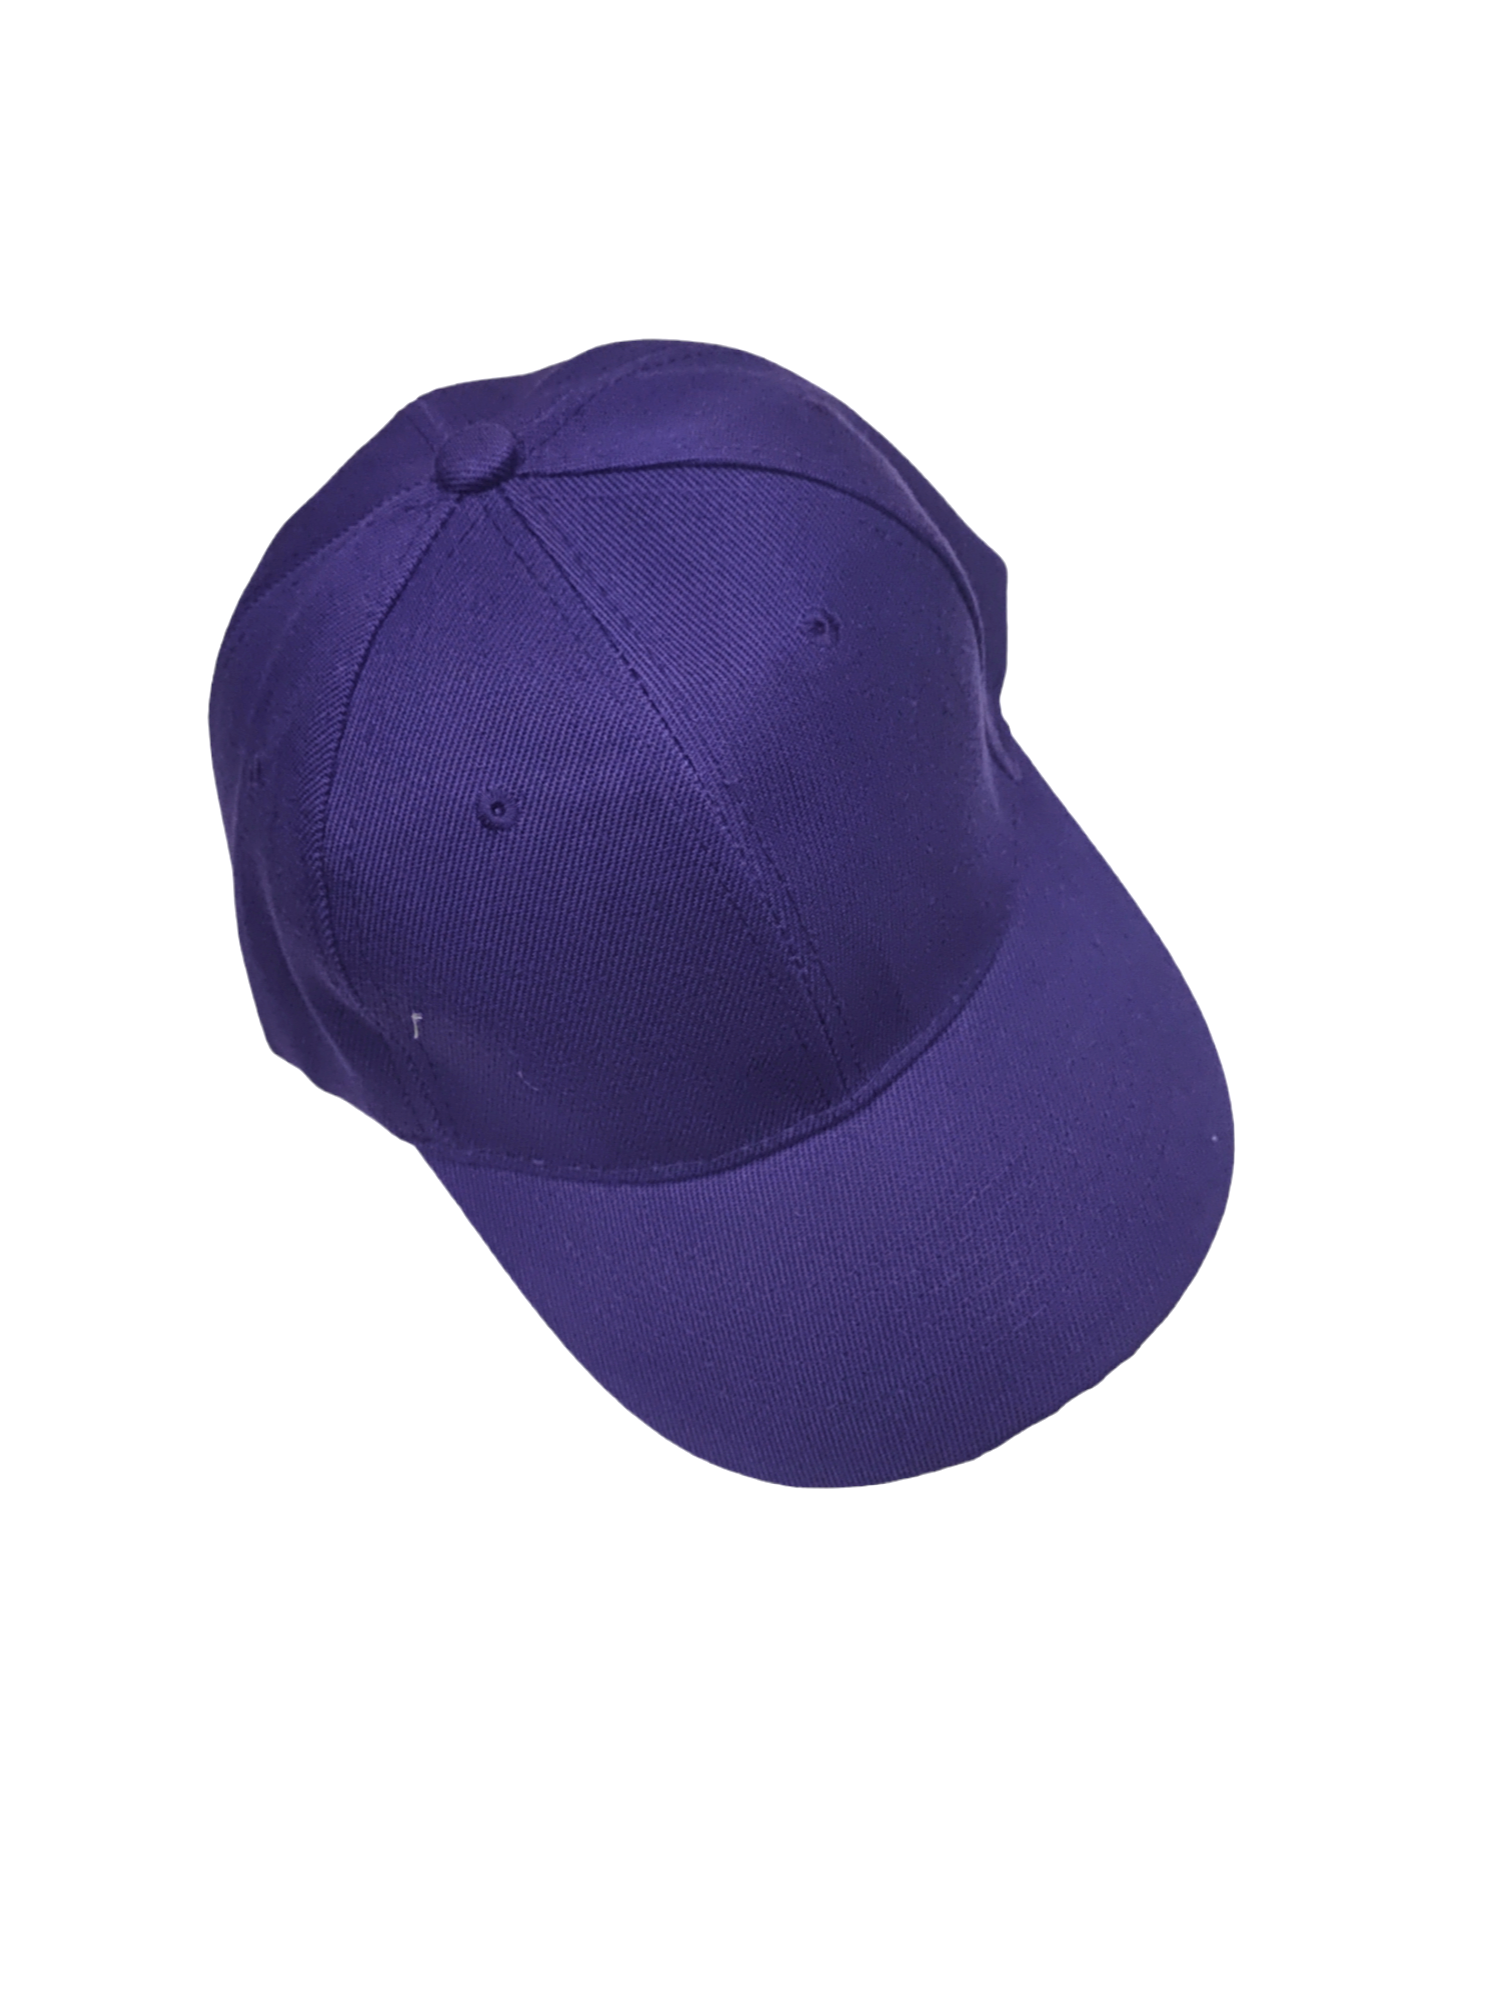 Casquette couleur unie violet (x12)#20